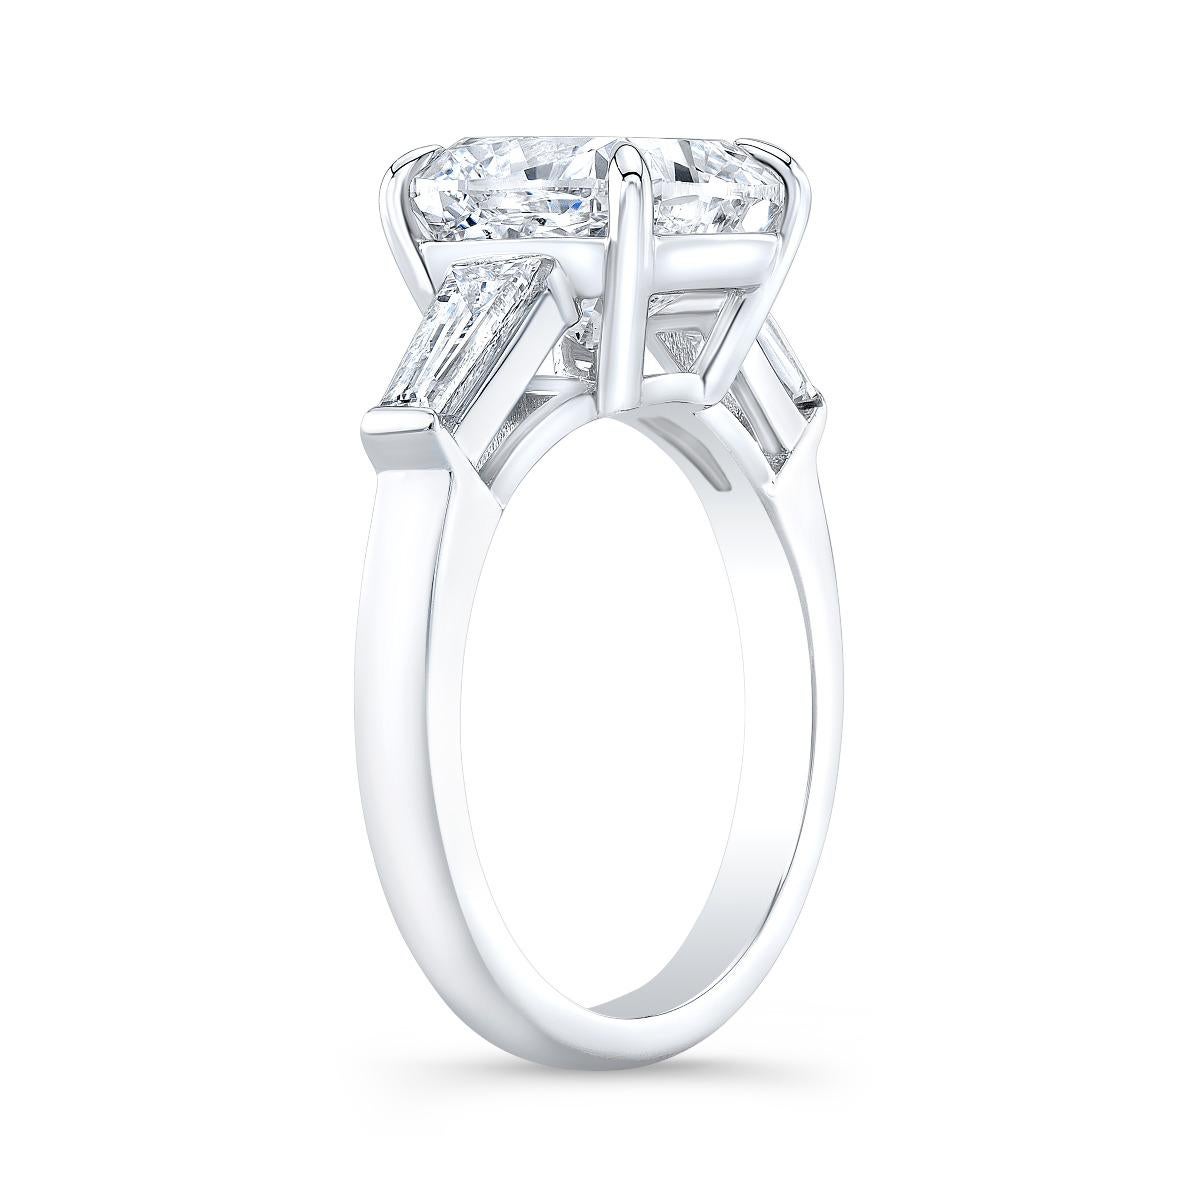 Taille coussin EXCEPTIONnelle bague avec diamants baguettes coniques taille coussin de 5 carats certifiés par le GIA